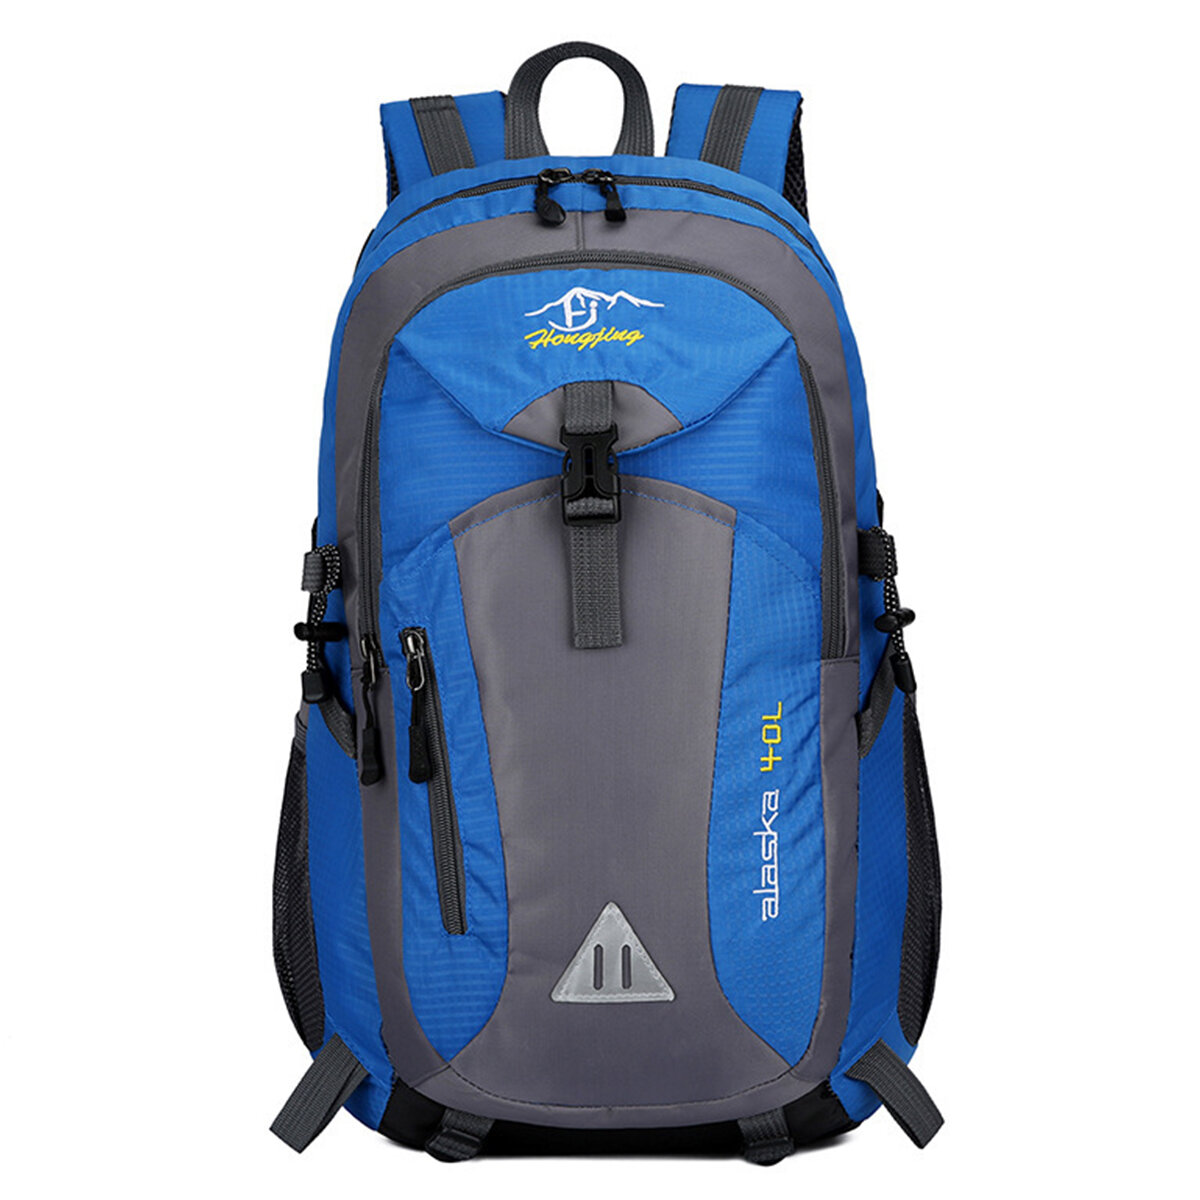 Wodoodporny plecak wspinaczkowy o pojemności 40L, sportowy plecak na podróże na świeżym powietrzu, wędrówki i torby na ramię.